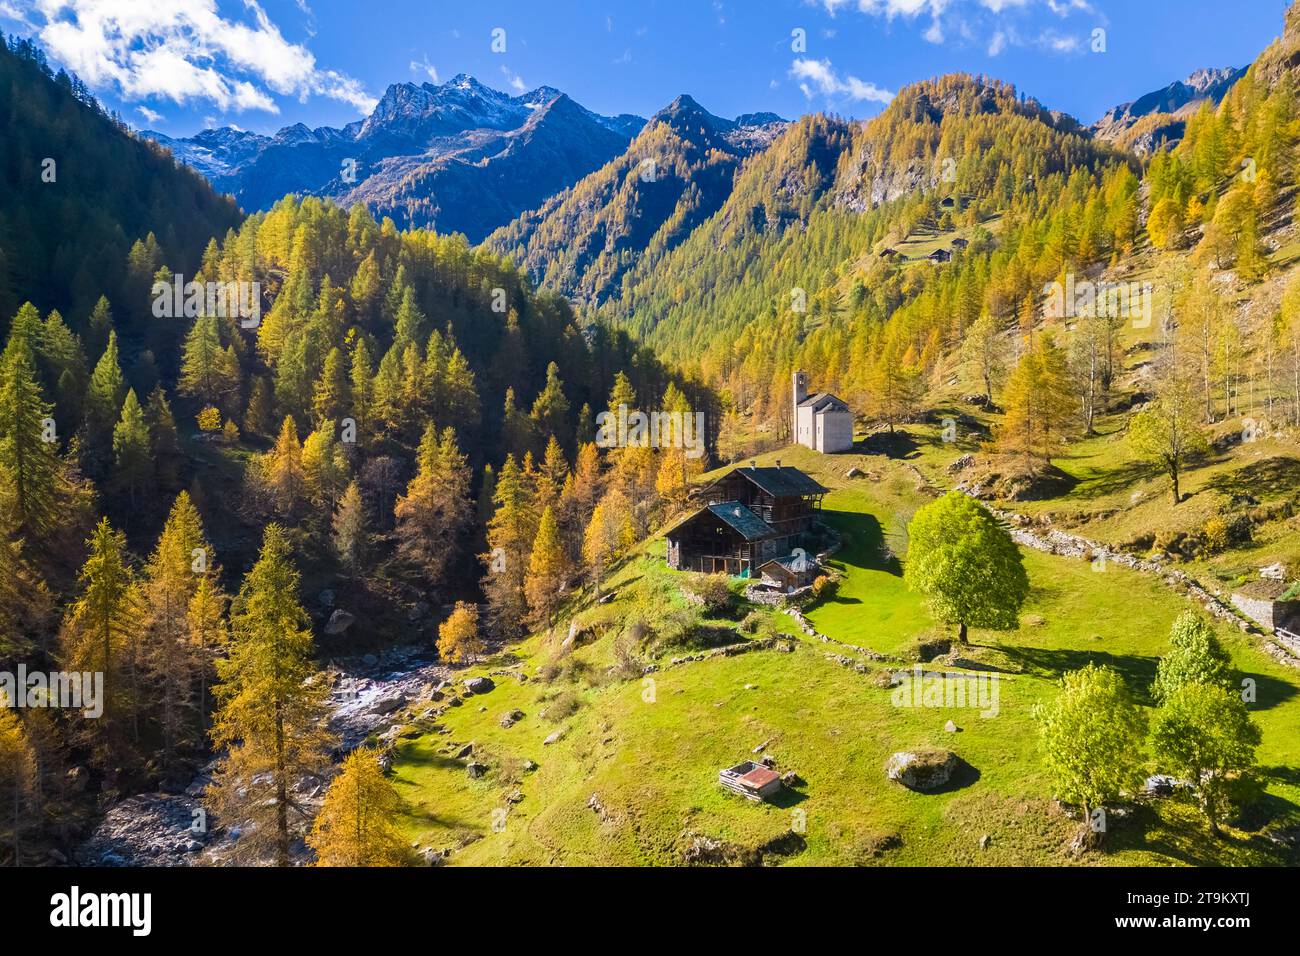 Veduta aerea della Peccia, piccolo villaggio walser in Val Vogna, Riva Valdobbia, Valsesia, provincia di Vercelli, Piemonte, Italia, Europa. Foto Stock